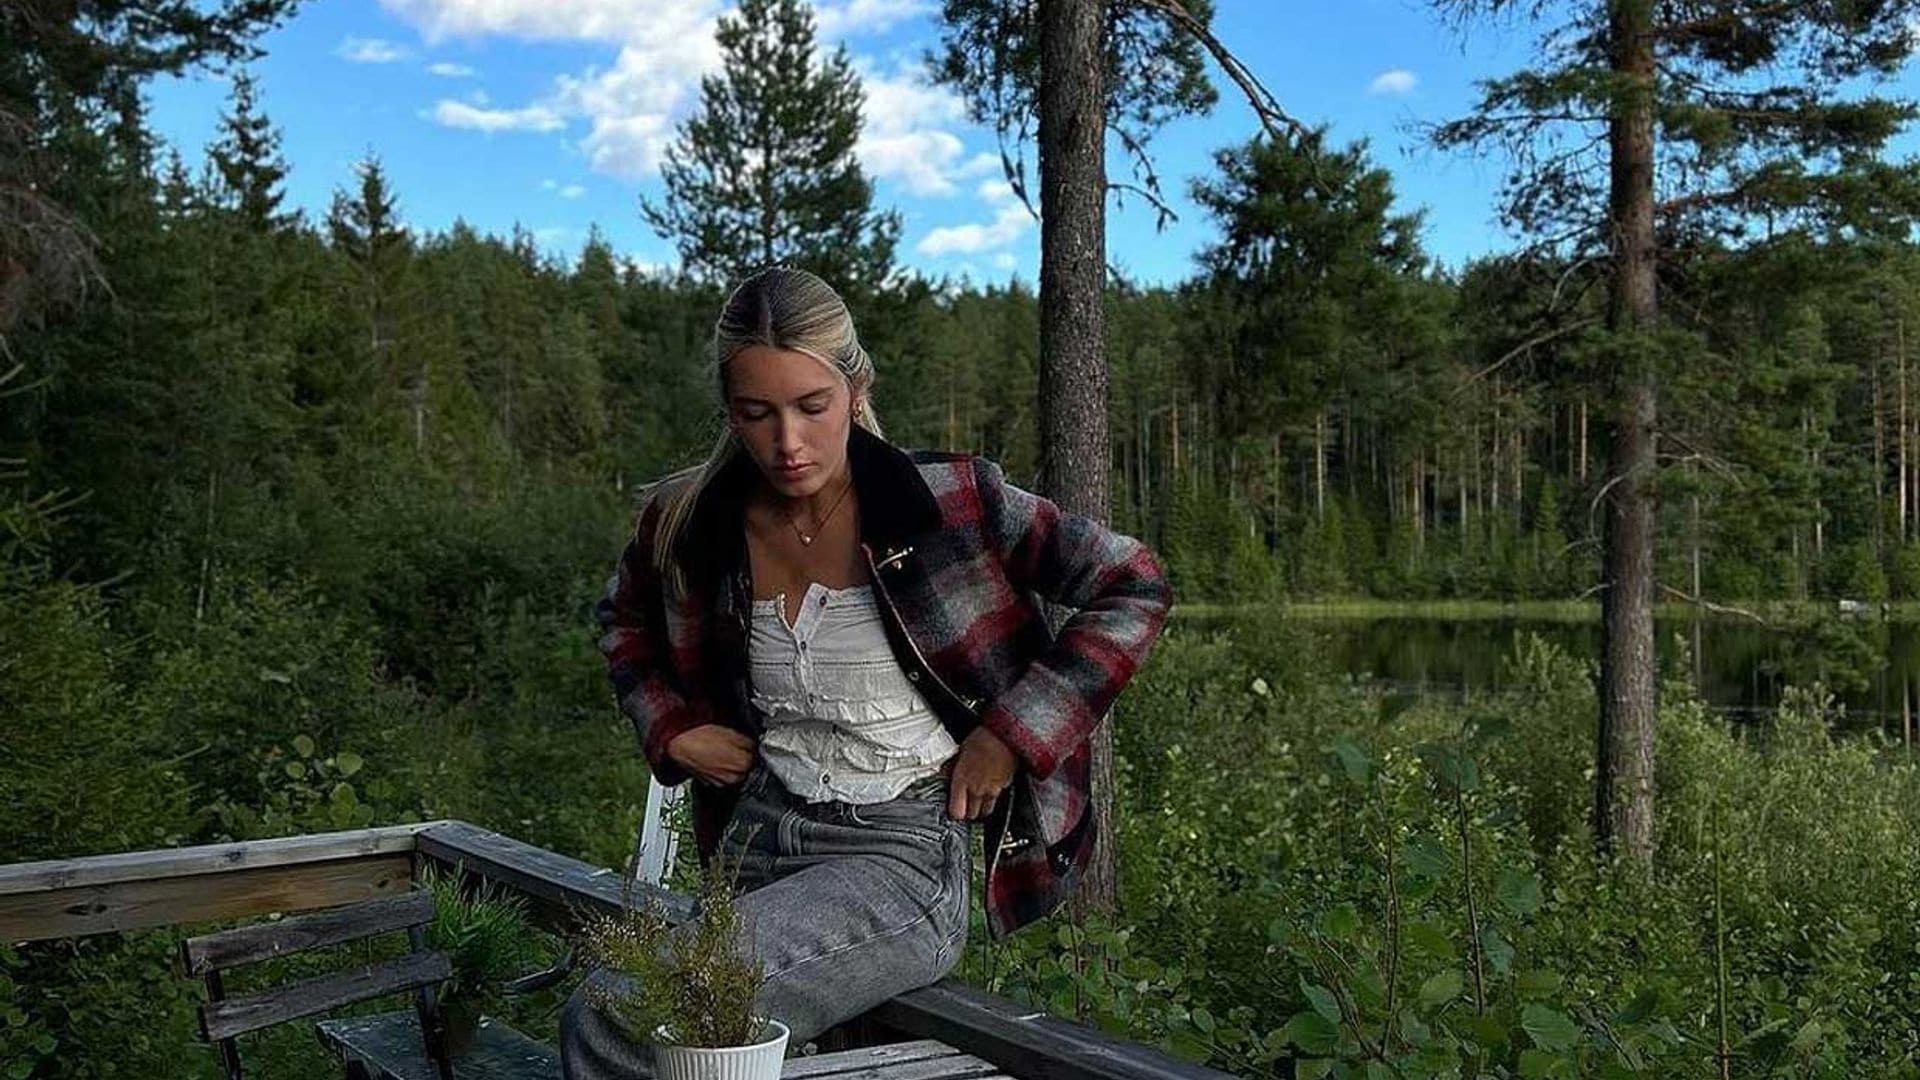 Jornadas de pesca y paseos en la naturaleza: así han sido las vacaciones de Daniela Figo en Suecia